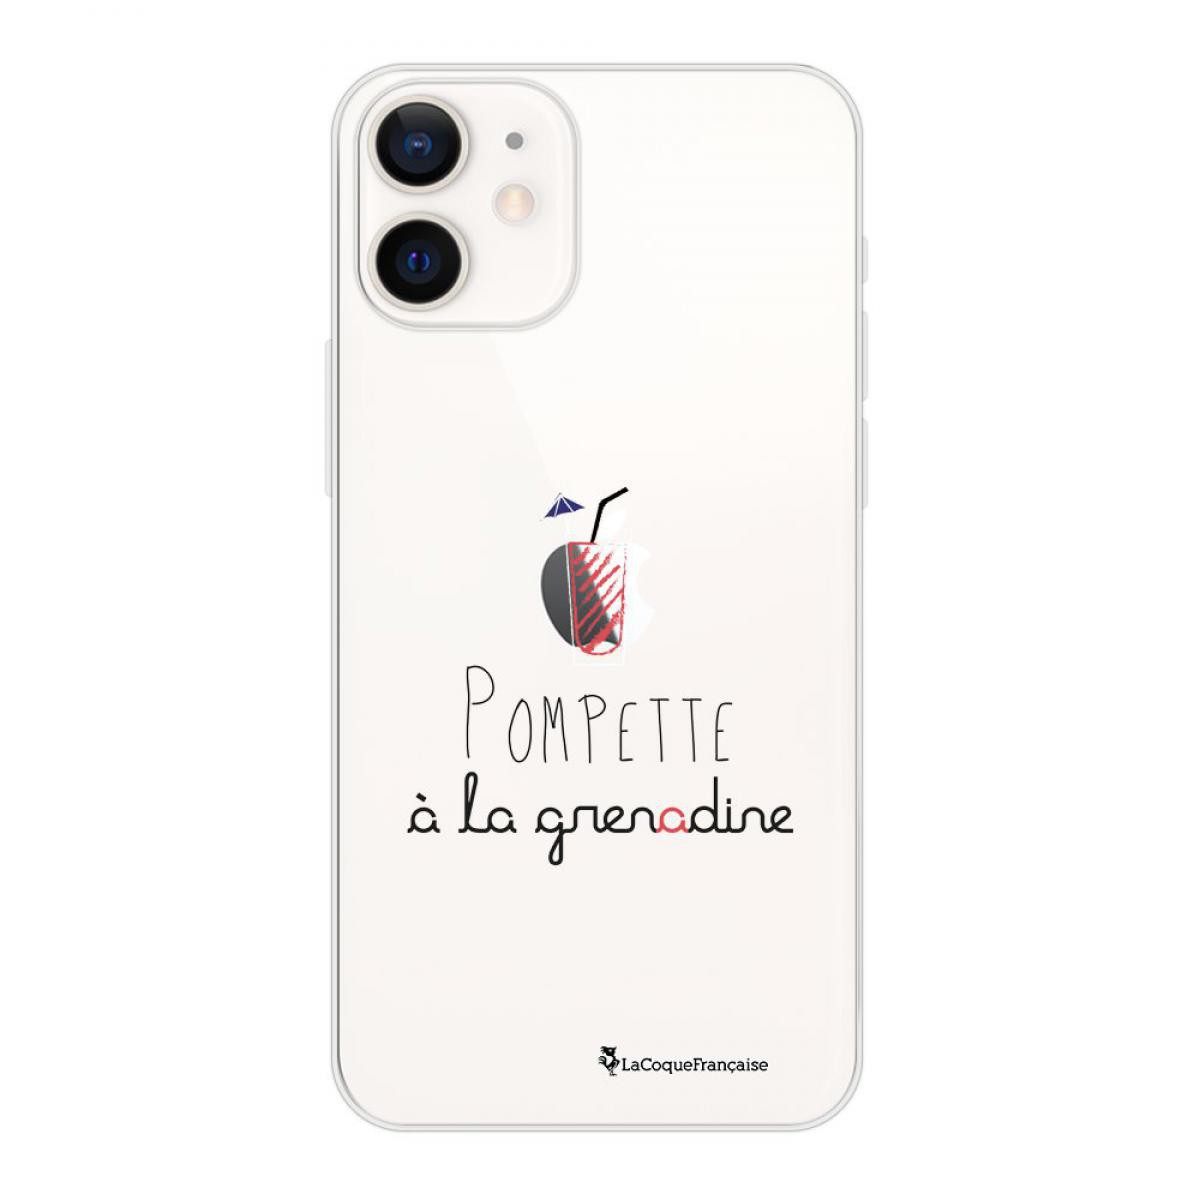 La Coque Francaise - Coque iPhone 12 mini souple transparente Pompette à la grenadine Motif Ecriture Tendance La Coque Francaise - Coque, étui smartphone